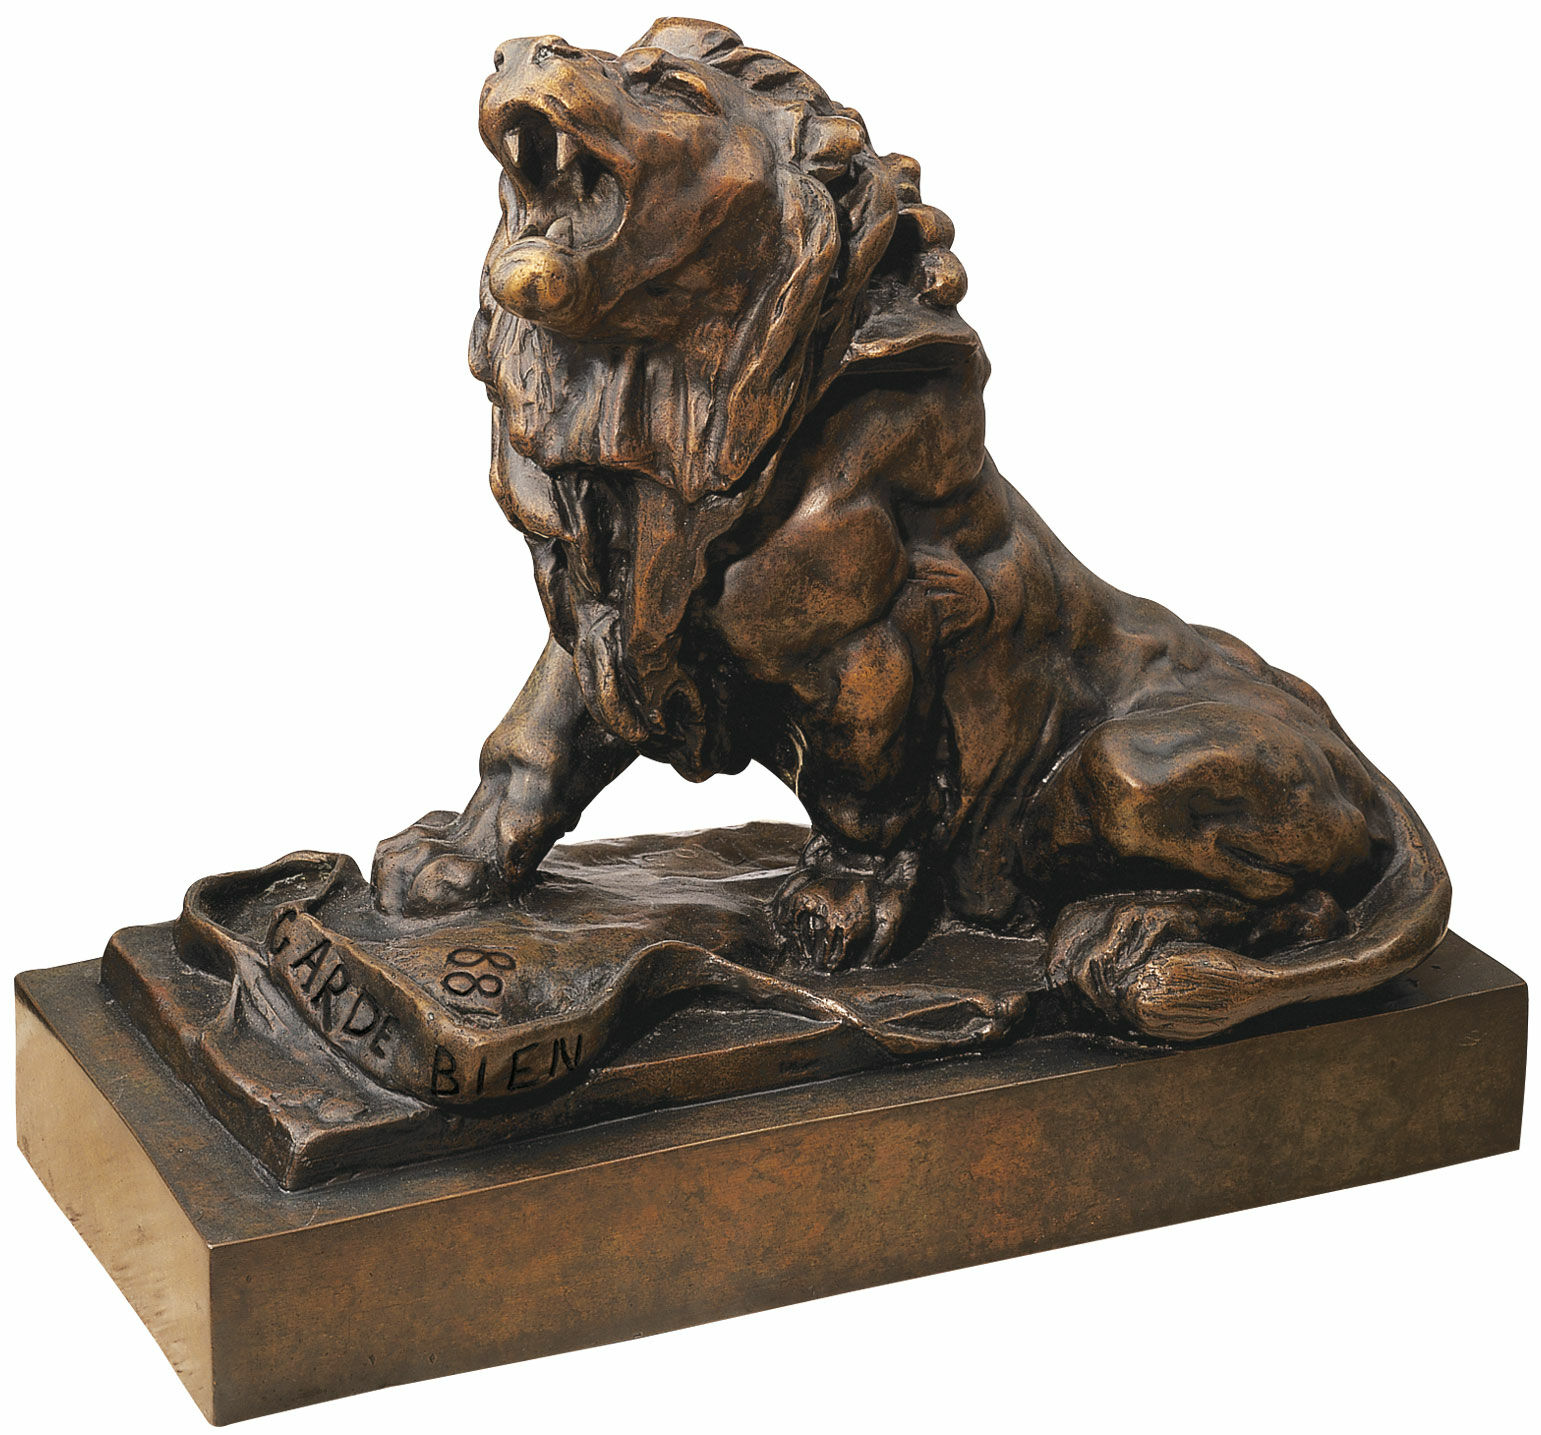 Skulptur "Det gråtande lejonet" (Le lion qui pleure), version i brons von Auguste Rodin